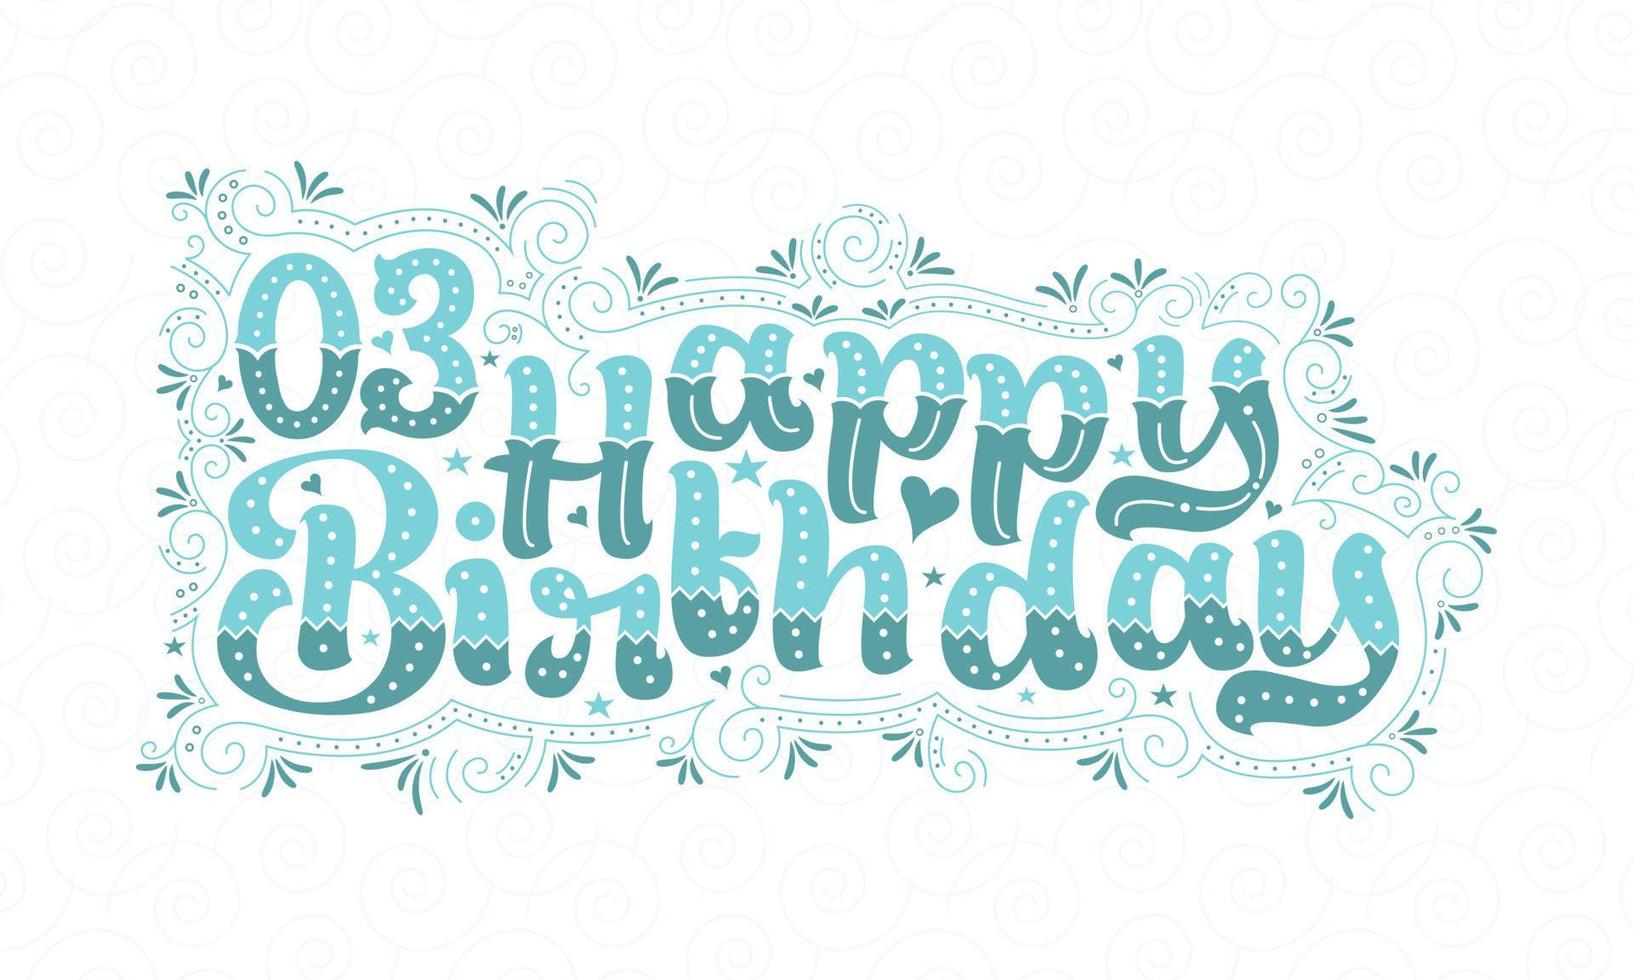 3a scritta di buon compleanno, bellissimo design tipografico di 3 anni di compleanno con puntini, linee e foglie aqua. vettore